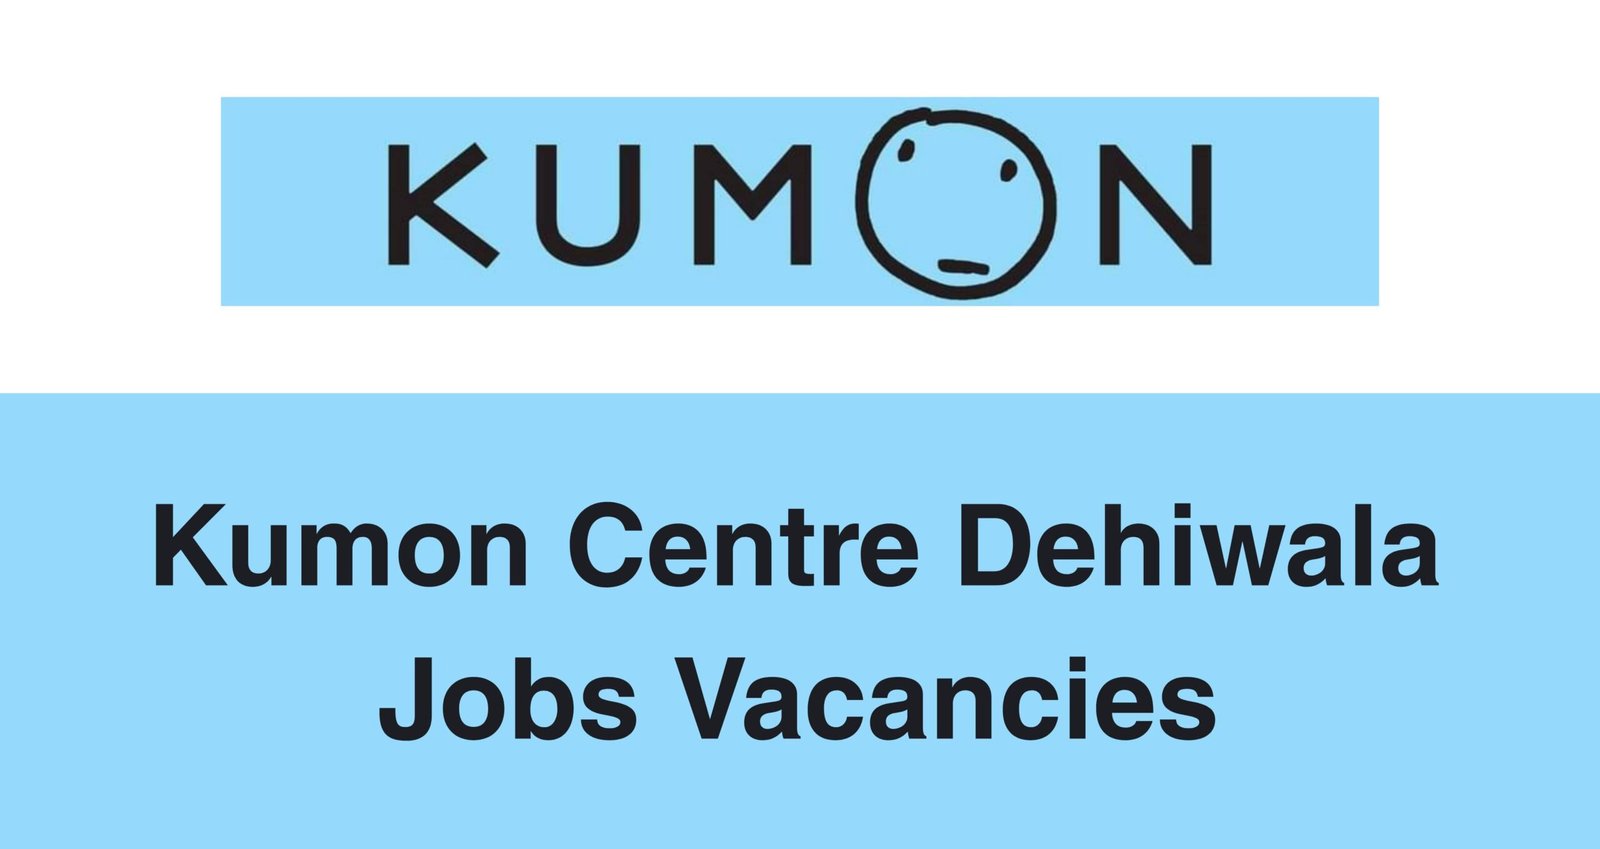 Kumon Centre Dehiwala Jobs Vacancies